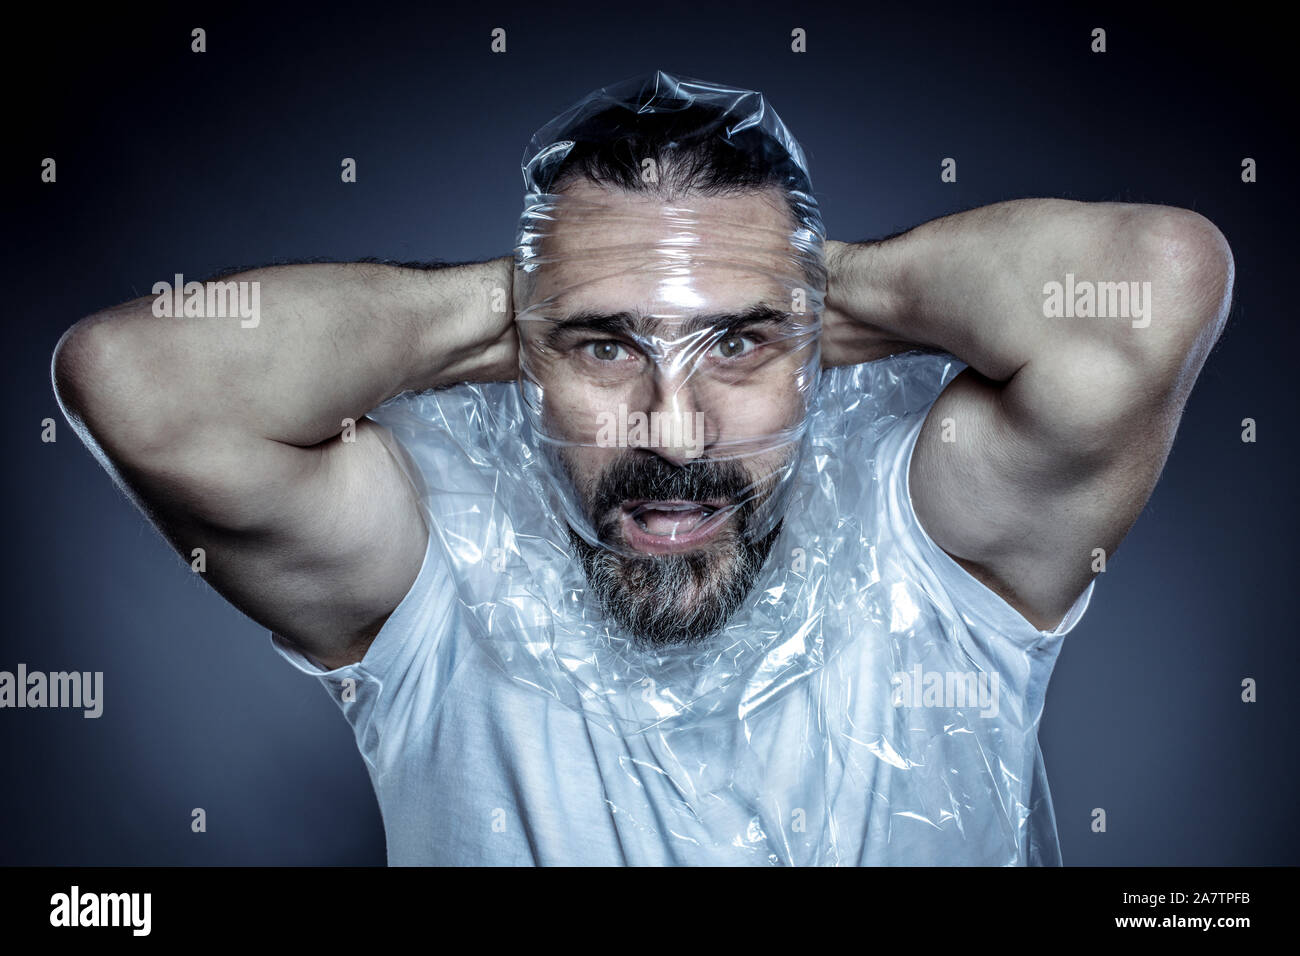 Retrato de un hombre con barba y su rostro envuelto en una película de plástico. Concepto de toxicidad de los materiales plásticos y su uso excesivo en la vida común Foto de stock